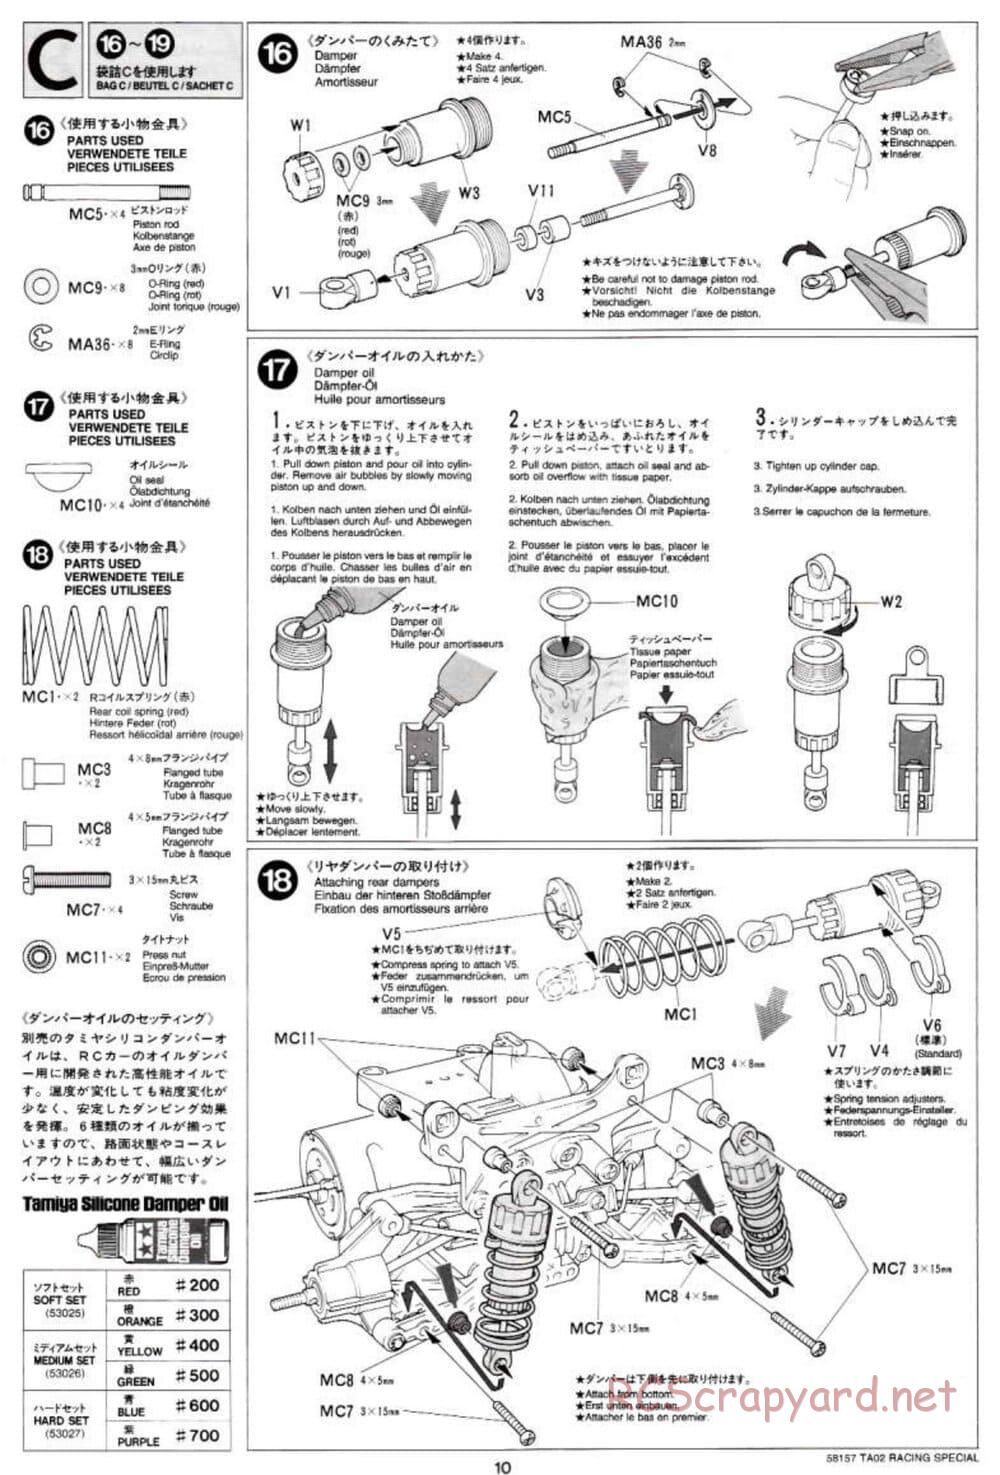 Tamiya - TA-02RS Chassis - Manual - Page 10